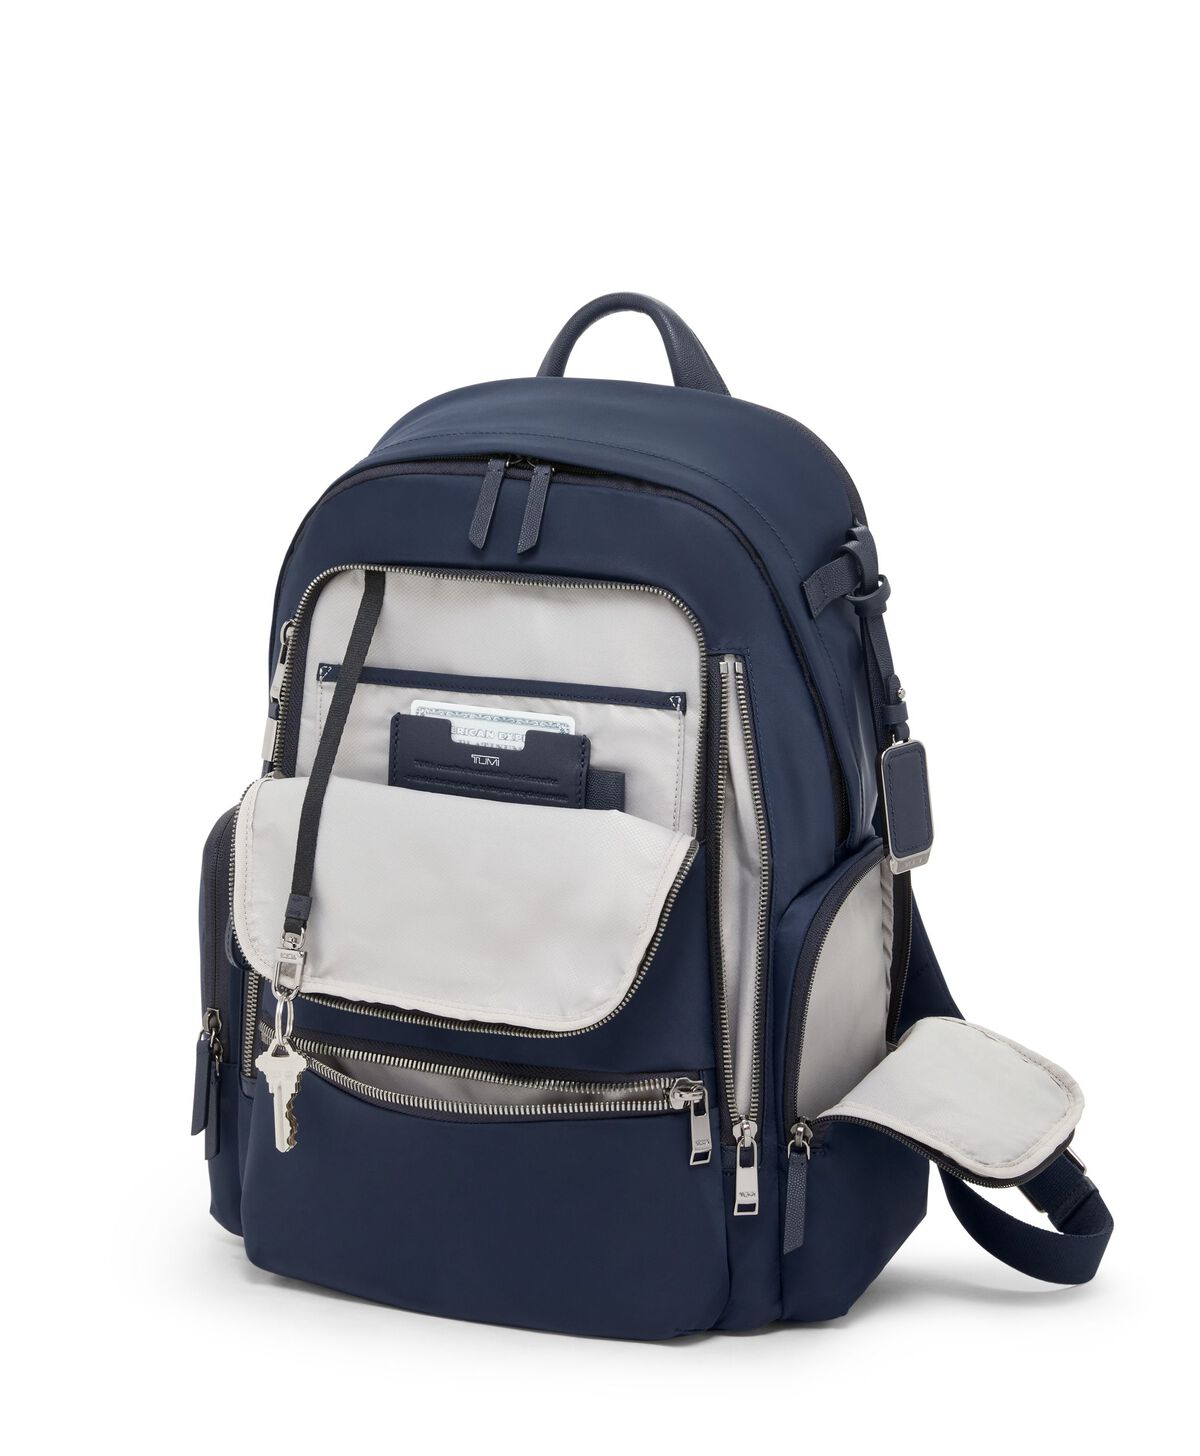 Pen + Gear backpack charm